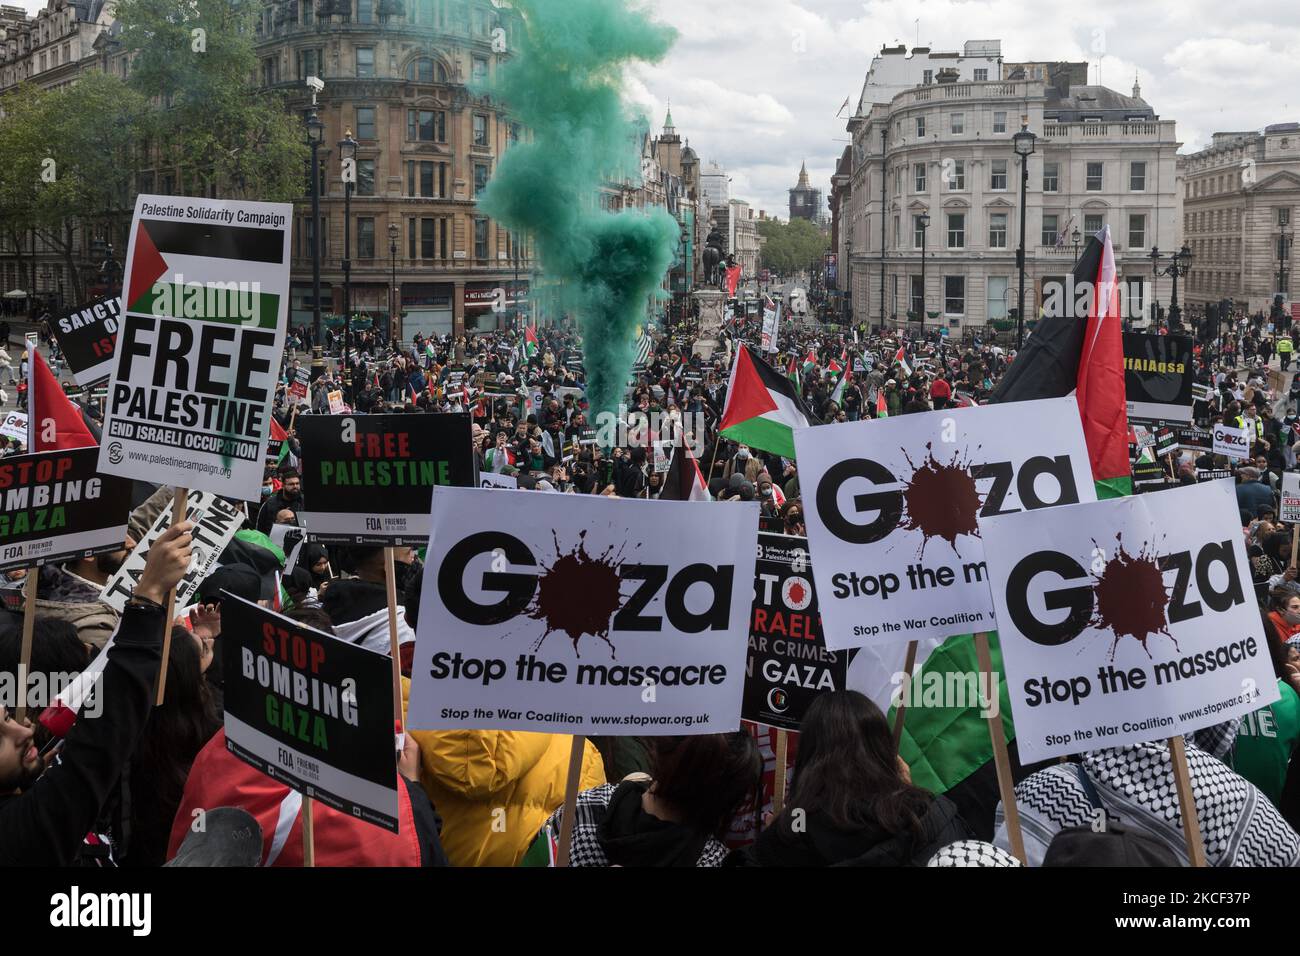 LONDRES, REINO UNIDO - 22 DE MAYO DE 2021: Se dispara una oleada de humo cuando decenas de miles de manifestantes se reúnen en Trafalgar Square, en el centro de Londres, durante una manifestación en apoyo de Palestina, el 22 de mayo de 2021 en Londres, Inglaterra. Un alto el fuego entre Israel y Palestina entró en vigor el viernes después de 11 días de ataques aéreos que dejaron más de 250 muertos a medida que el conflicto se intensificaba debido a los desalojos planeados de familias palestinas de sus hogares por colonos judíos en el distrito de Sheikh Jarrah en Jerusalén oriental y a los enfrentamientos con la seguridad Fuerzas alrededor de la Ciudad Vieja durante el Ramadán. (Foto de Wiktor Szym Foto de stock